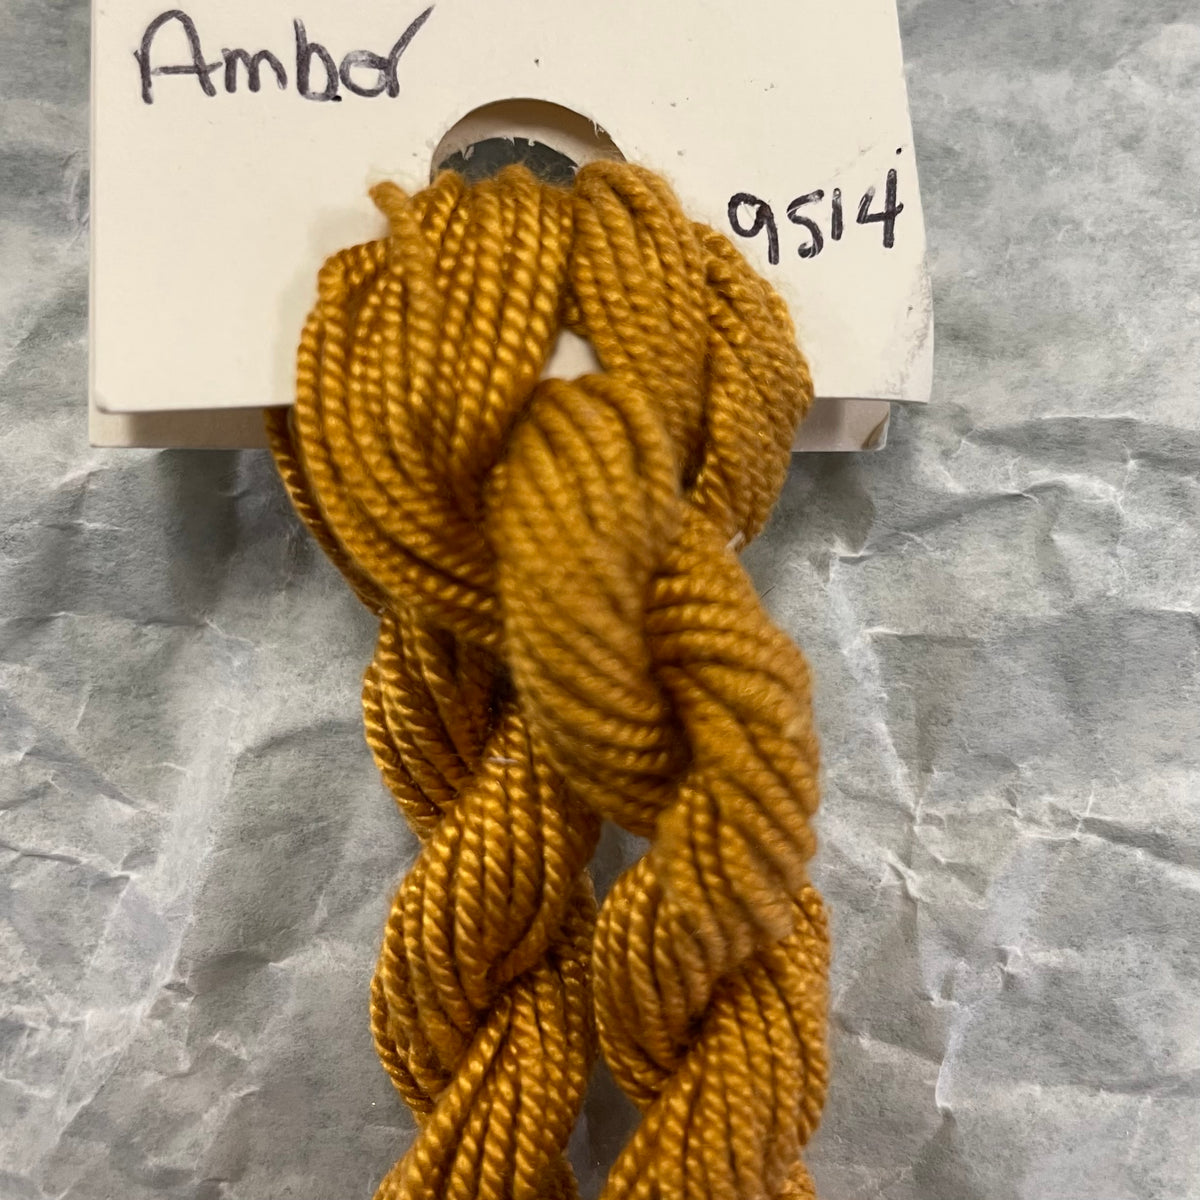 9514 Amber - Shinju Silk Thread Solid